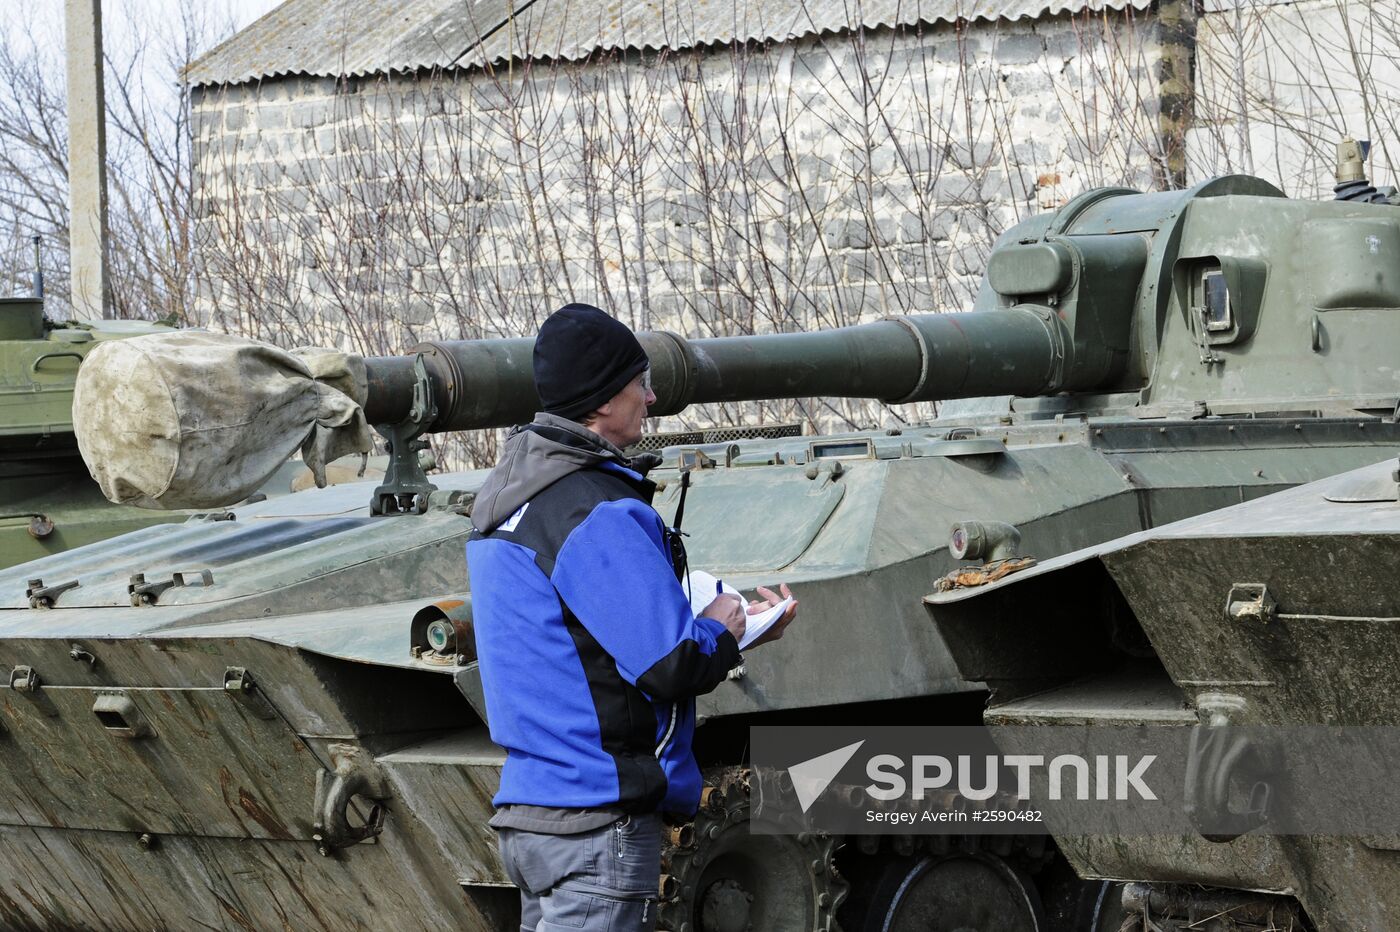 OSCE monitors heavy artillery withdrawal in Donetsk Region